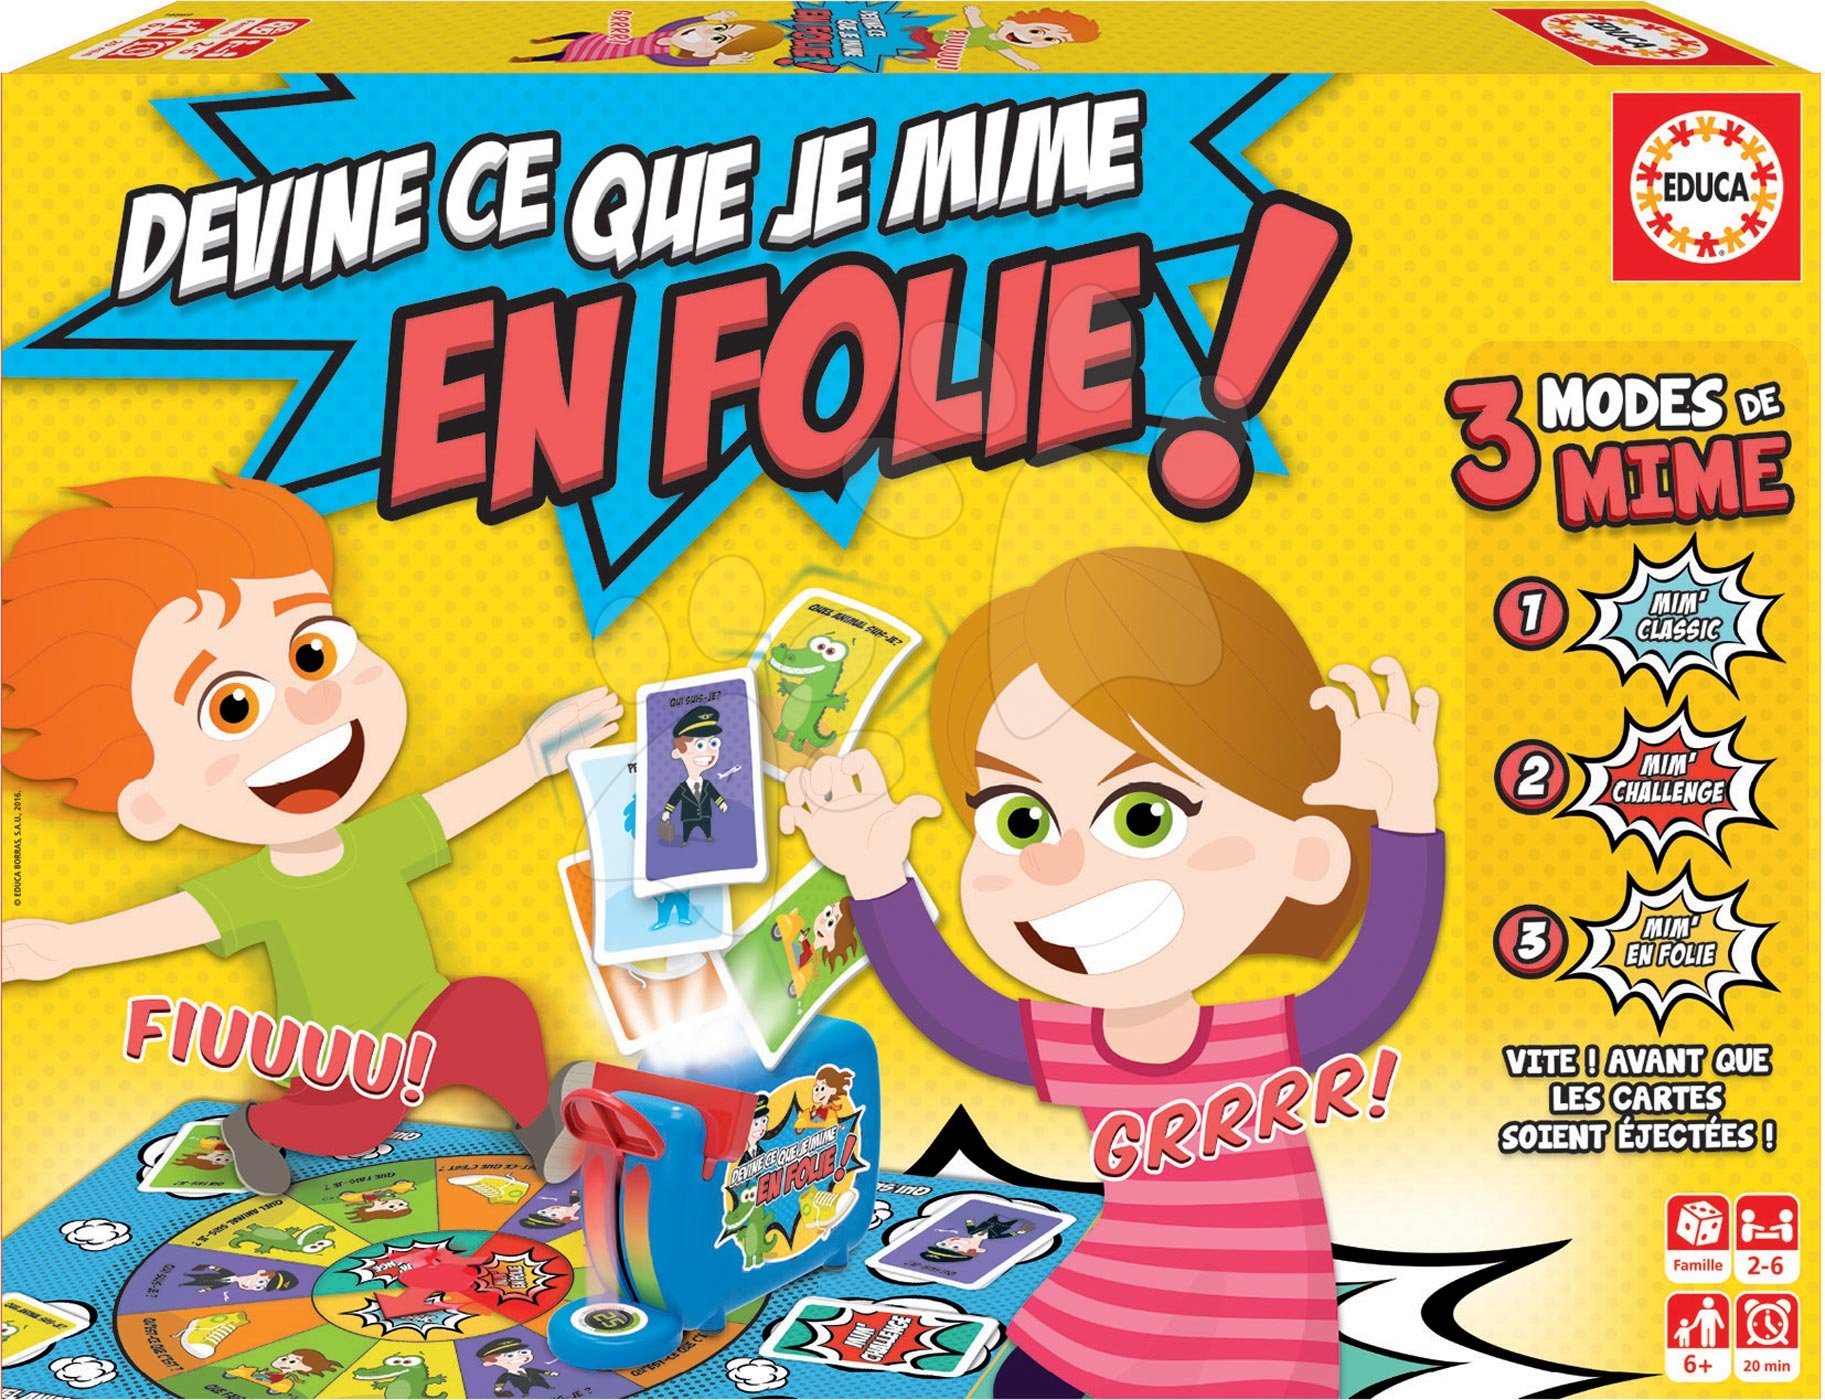 Társasjáték Devine Ce Que Je Mime En Folie! Educa francia nyelvű, 2-6 játékos részére 6 évtől